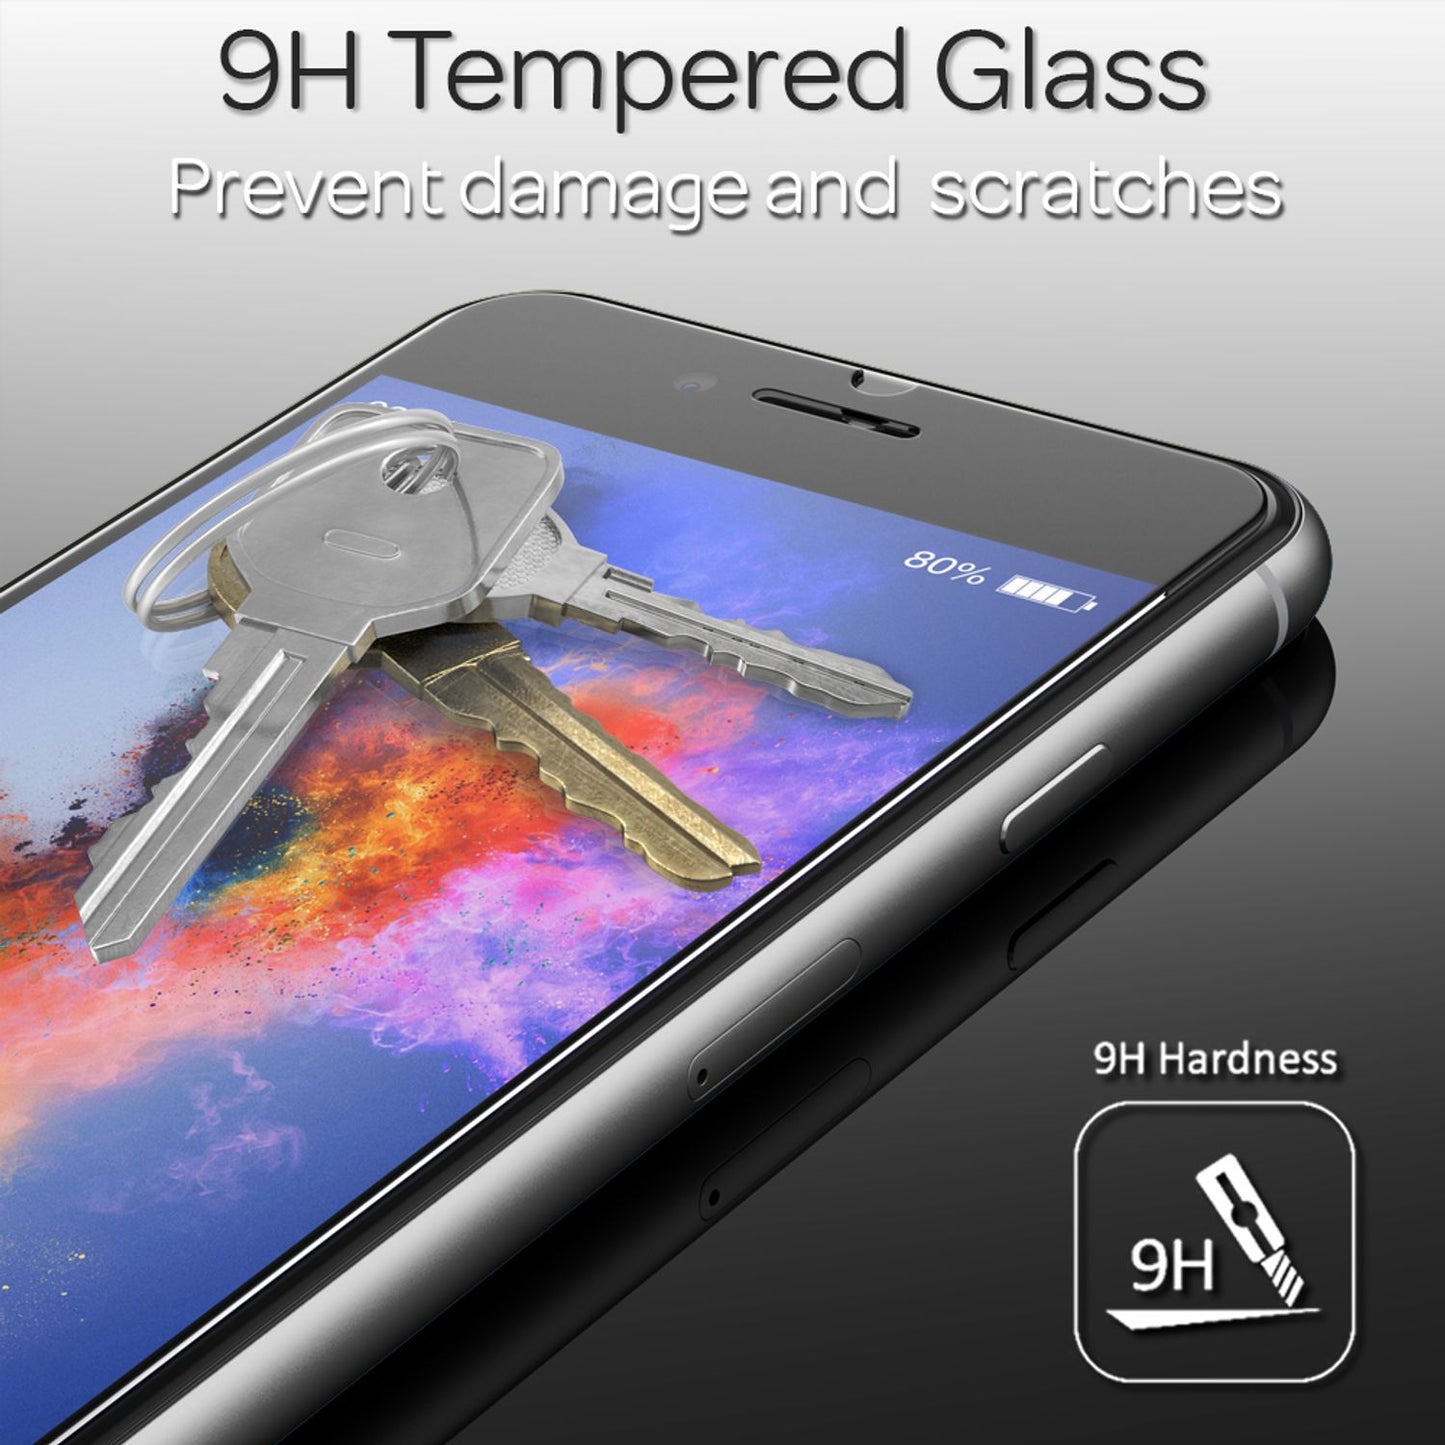 NALIA (2-Pack) Schutzglas für OnePlus 7T Glas, Full-Cover Screen Display Schutz